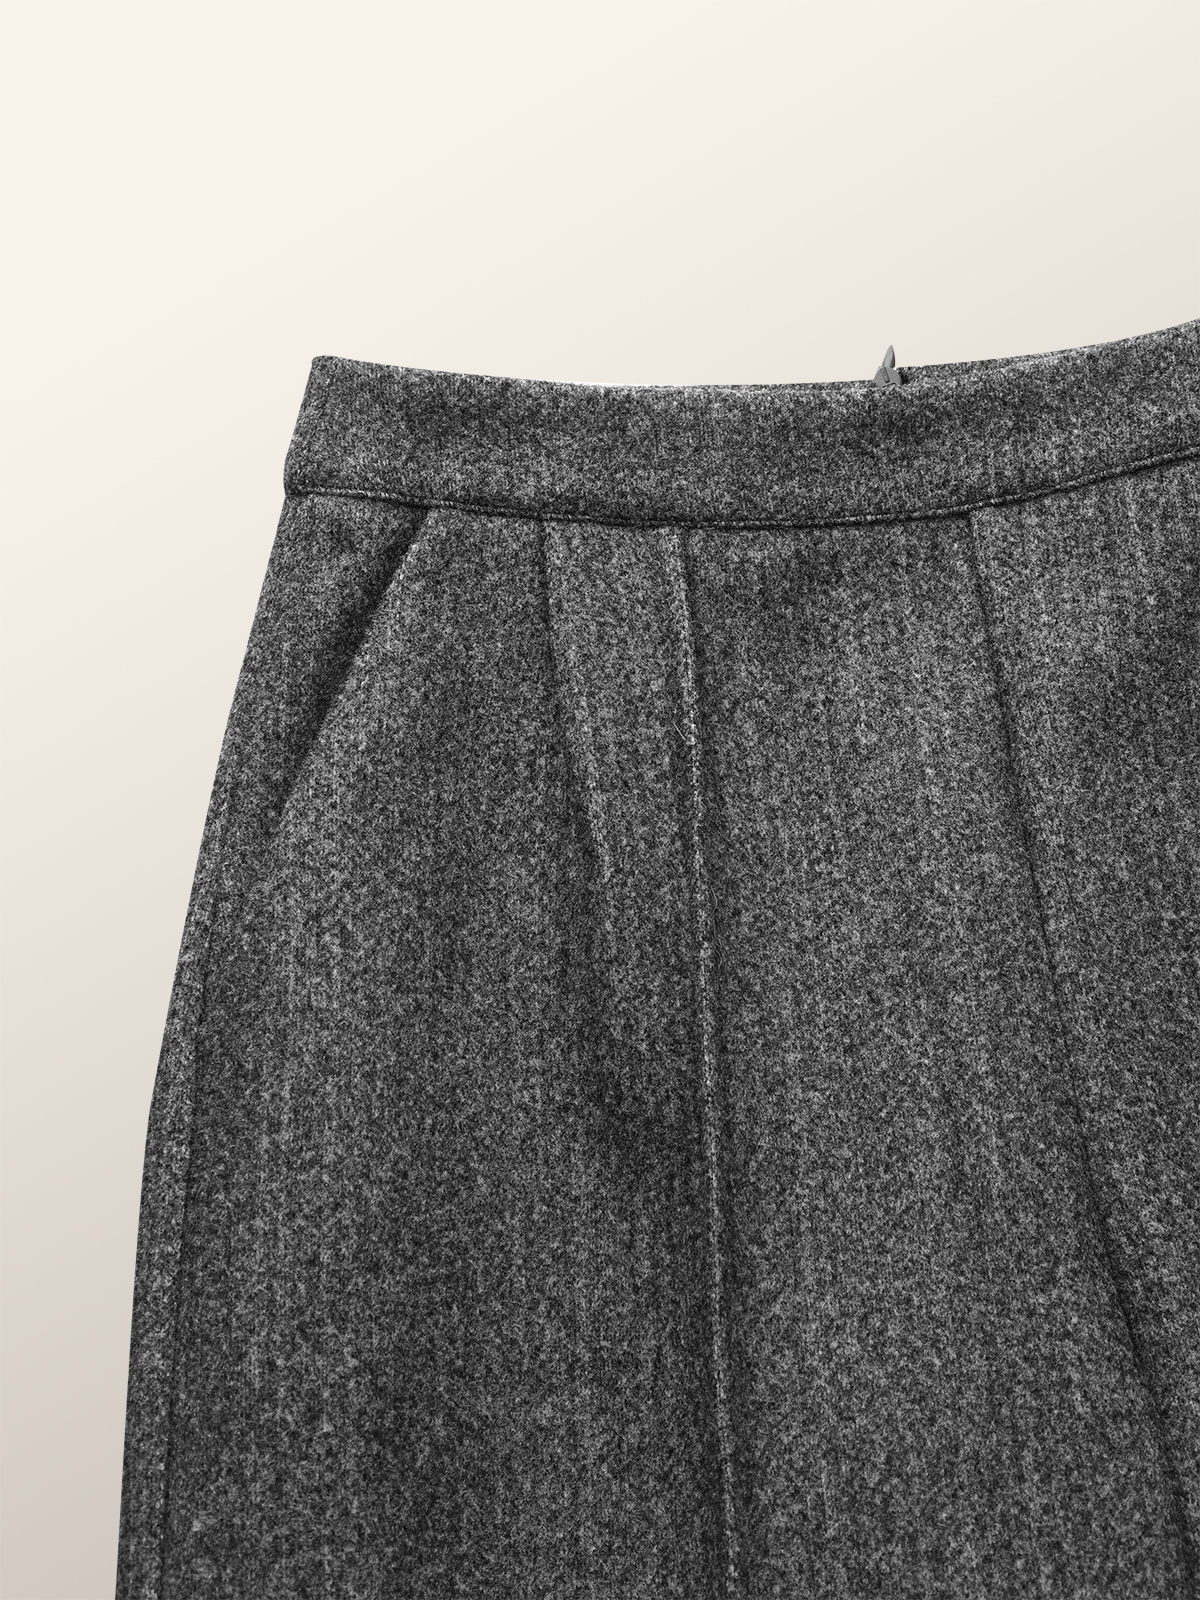 Regular Fit Plain Urban Fashion Pants | stylewe